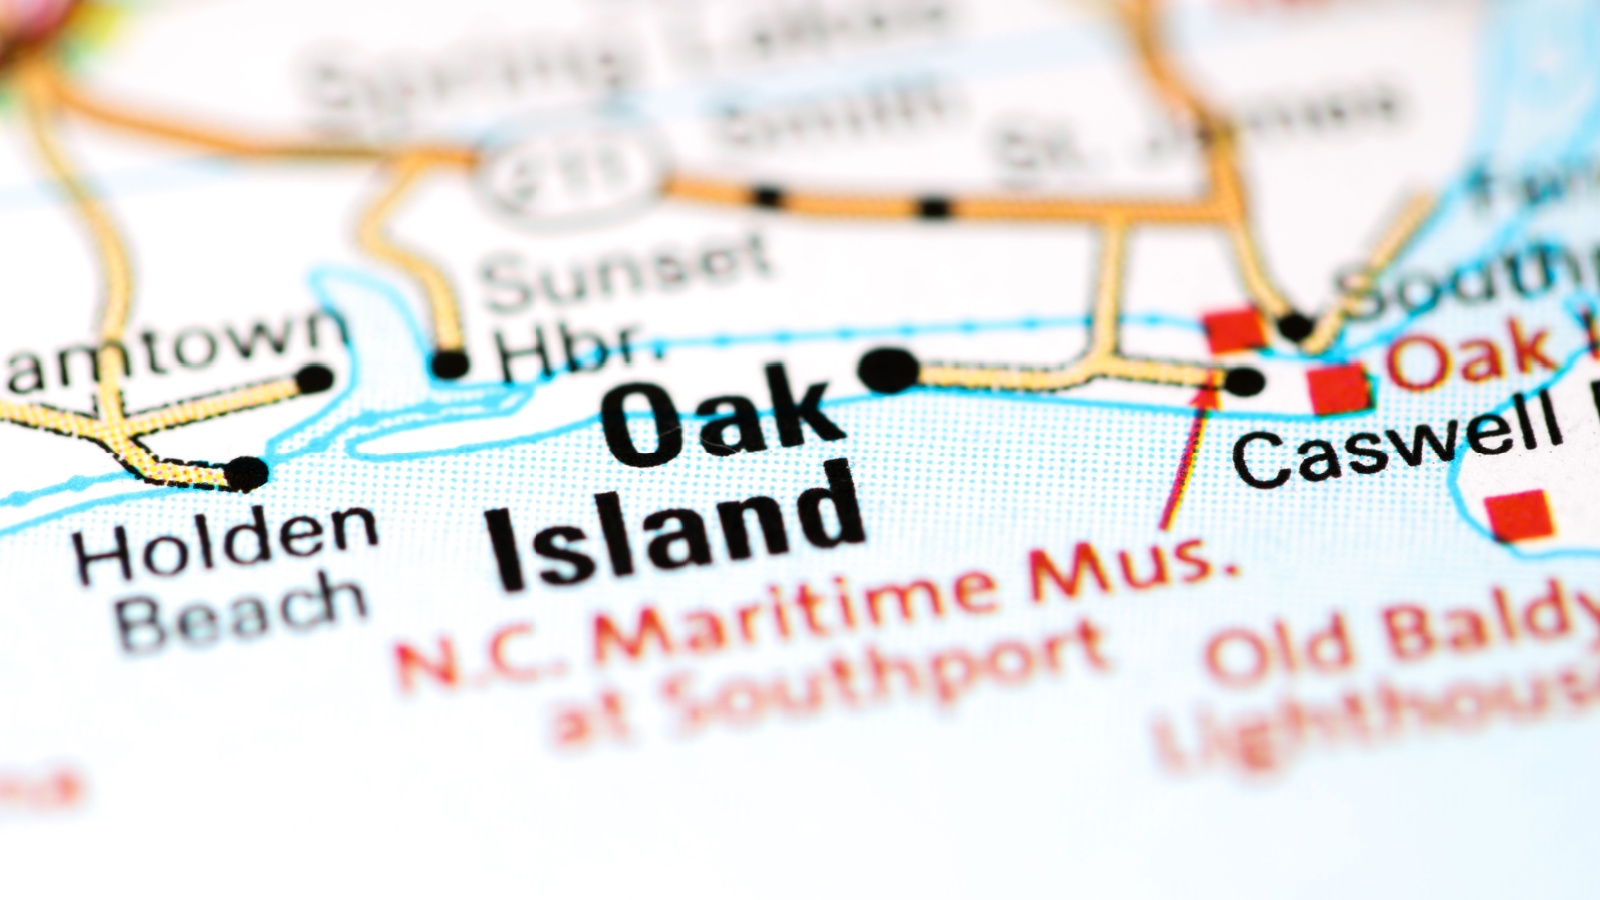 Map of oak island